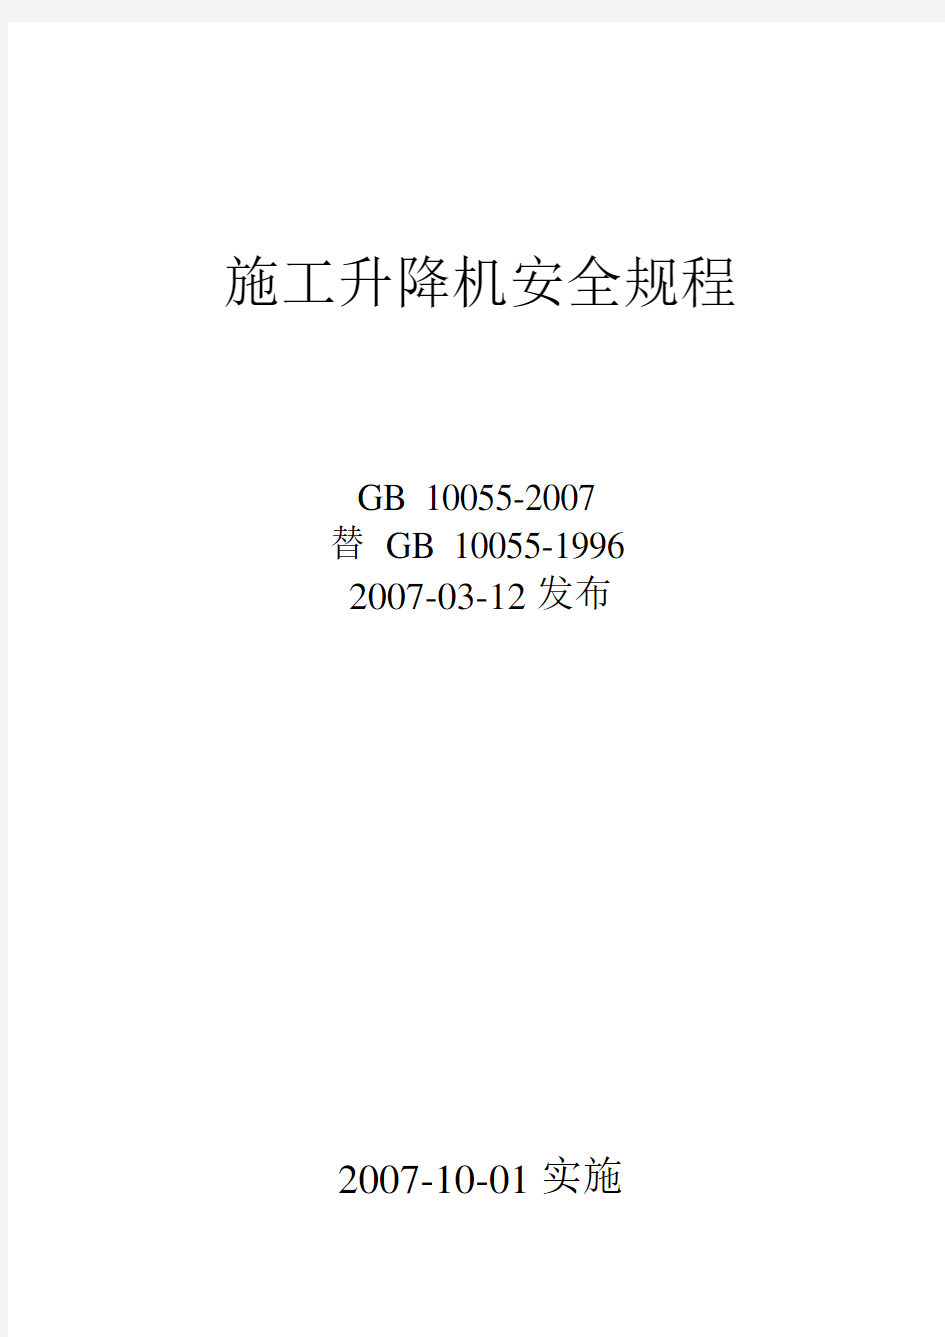 施工升降机安全规程GB10055-2007